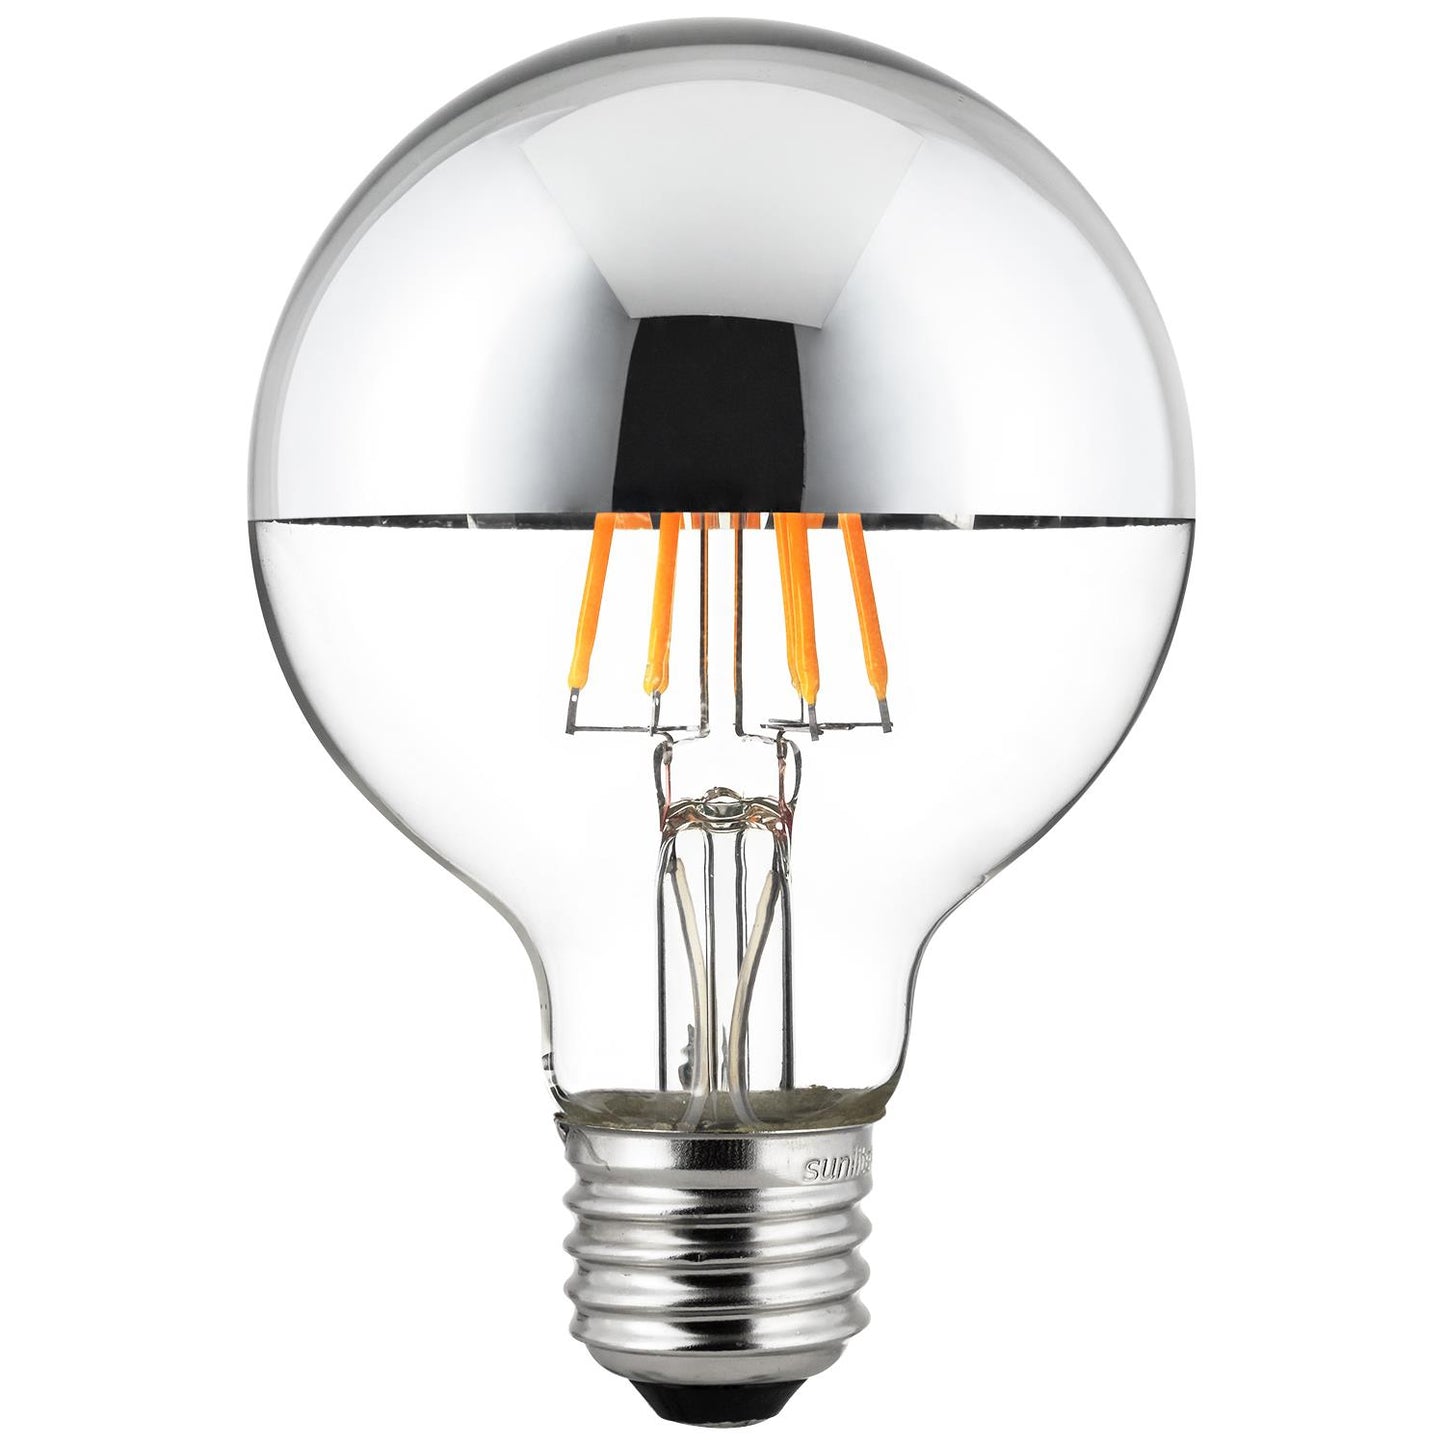 Sunlite 80494 LED Filament G25 Globe 6-Watt (60 Watt Equivalent) Clear Dimmable Light Bulb, 2200K - Warm White